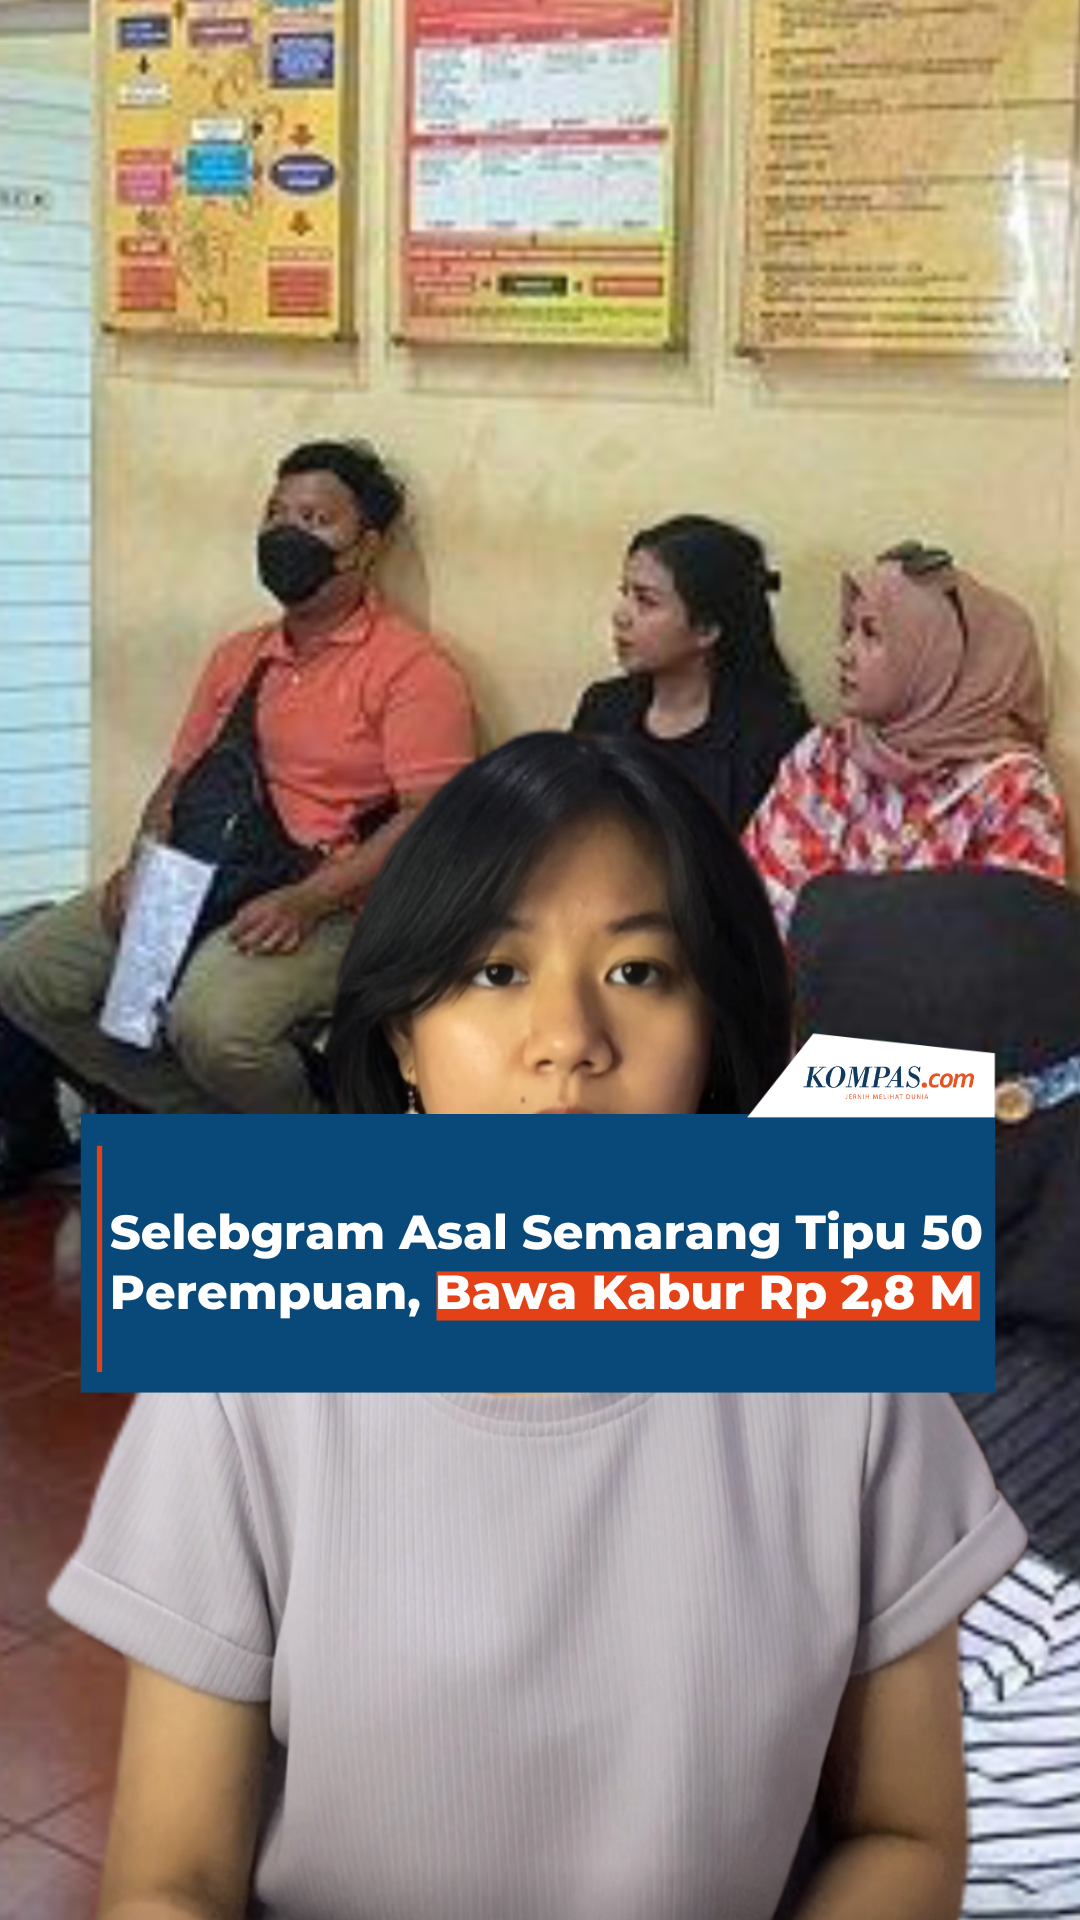 Selebgram Asal Semarang Tipu 50 Perempuan, Bawa Kabur Rp 2,8 M